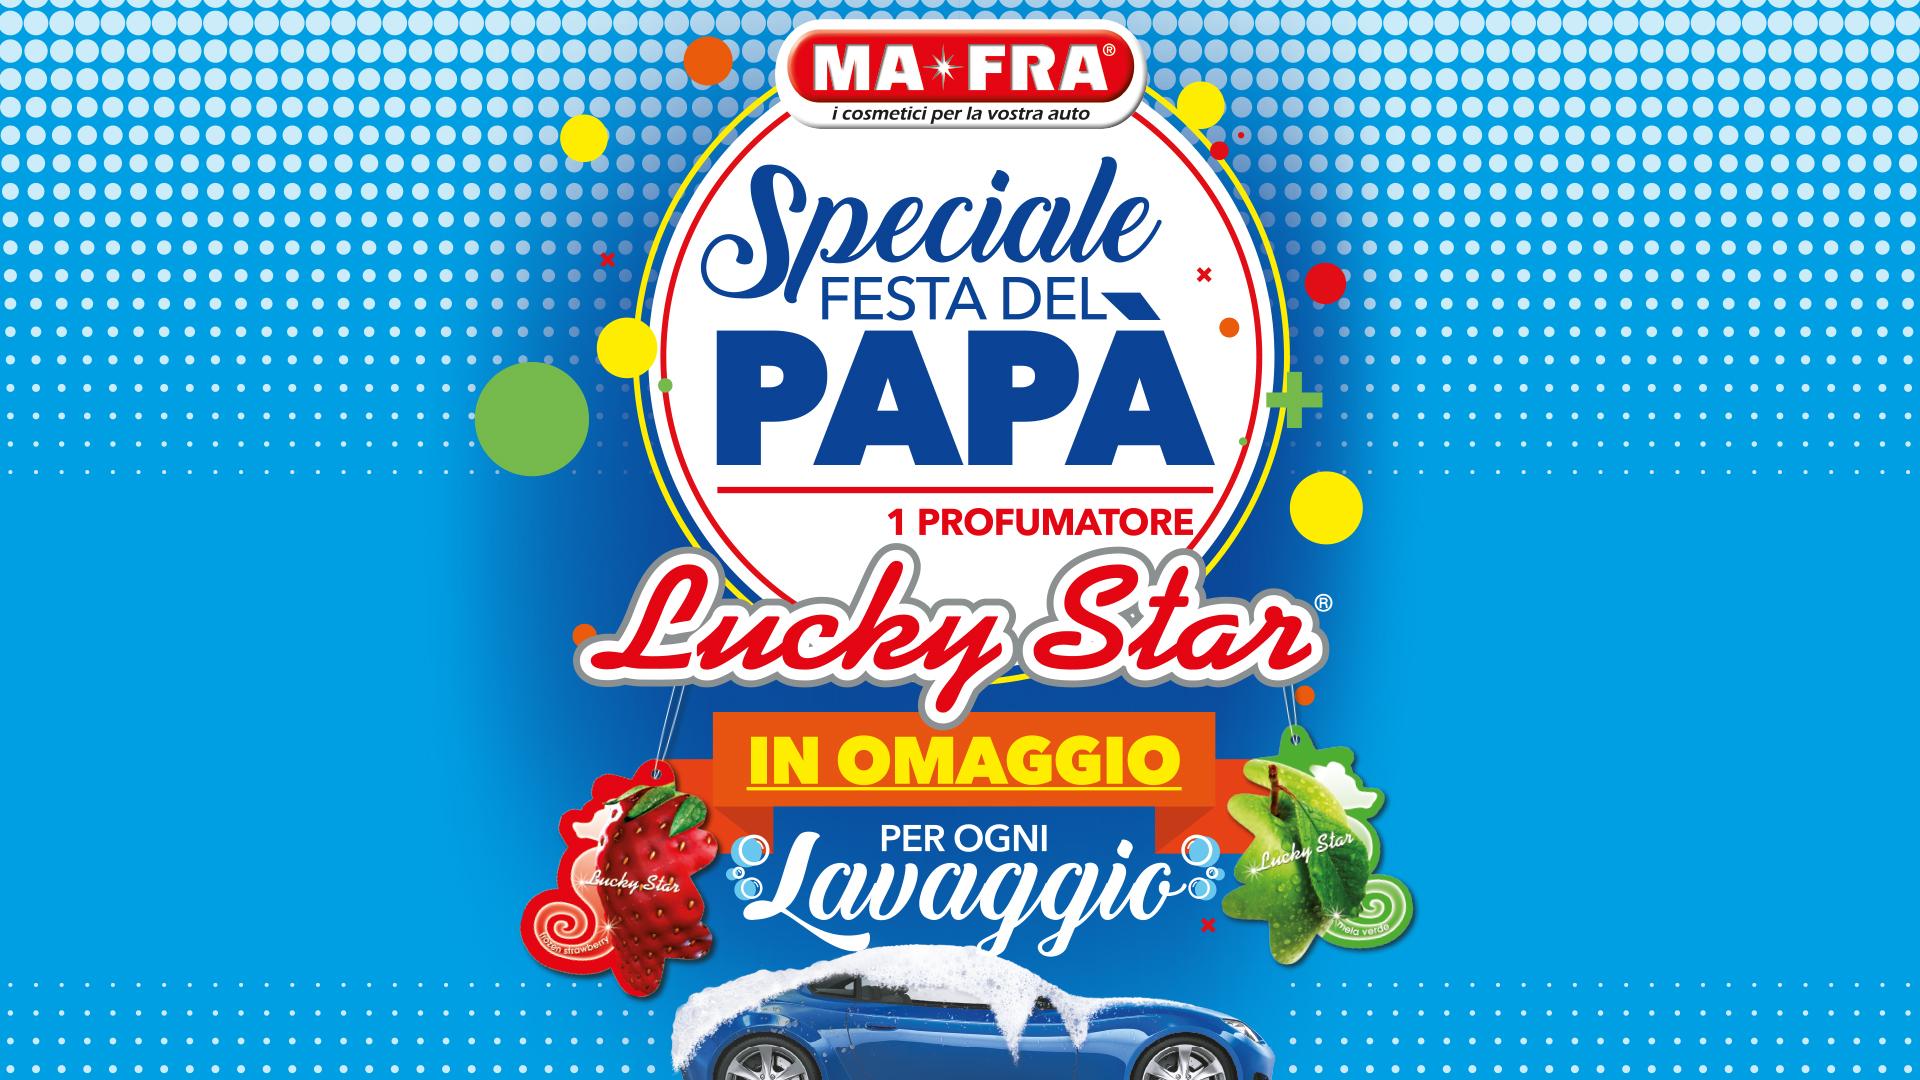 Festa del Papà: lava l'auto da Mafra e avrai un regalo speciale